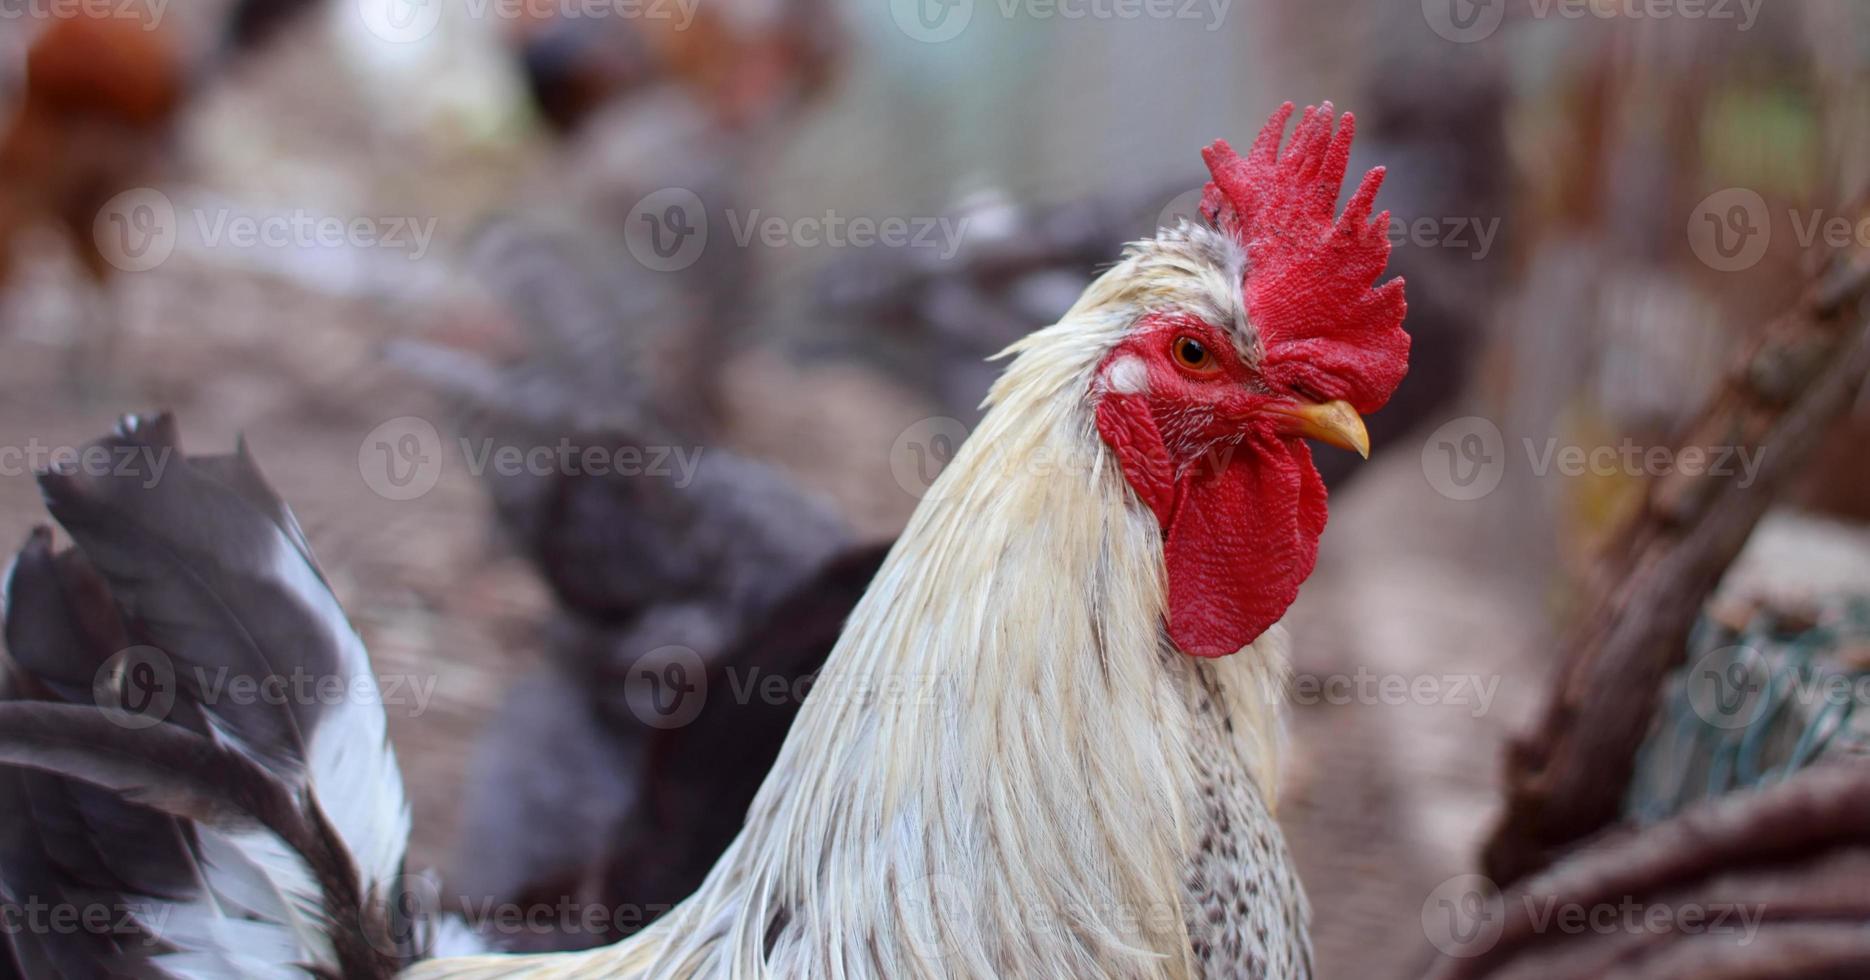 tête de coq en gros plan. portrait de tête en gros plan drôle ou humoristique d'un poulet ou d'un coq mâle avec de belles plumes jaunâtres peigne et acacia rouge vif avec un arrière-plan flou bokeh. coq photo